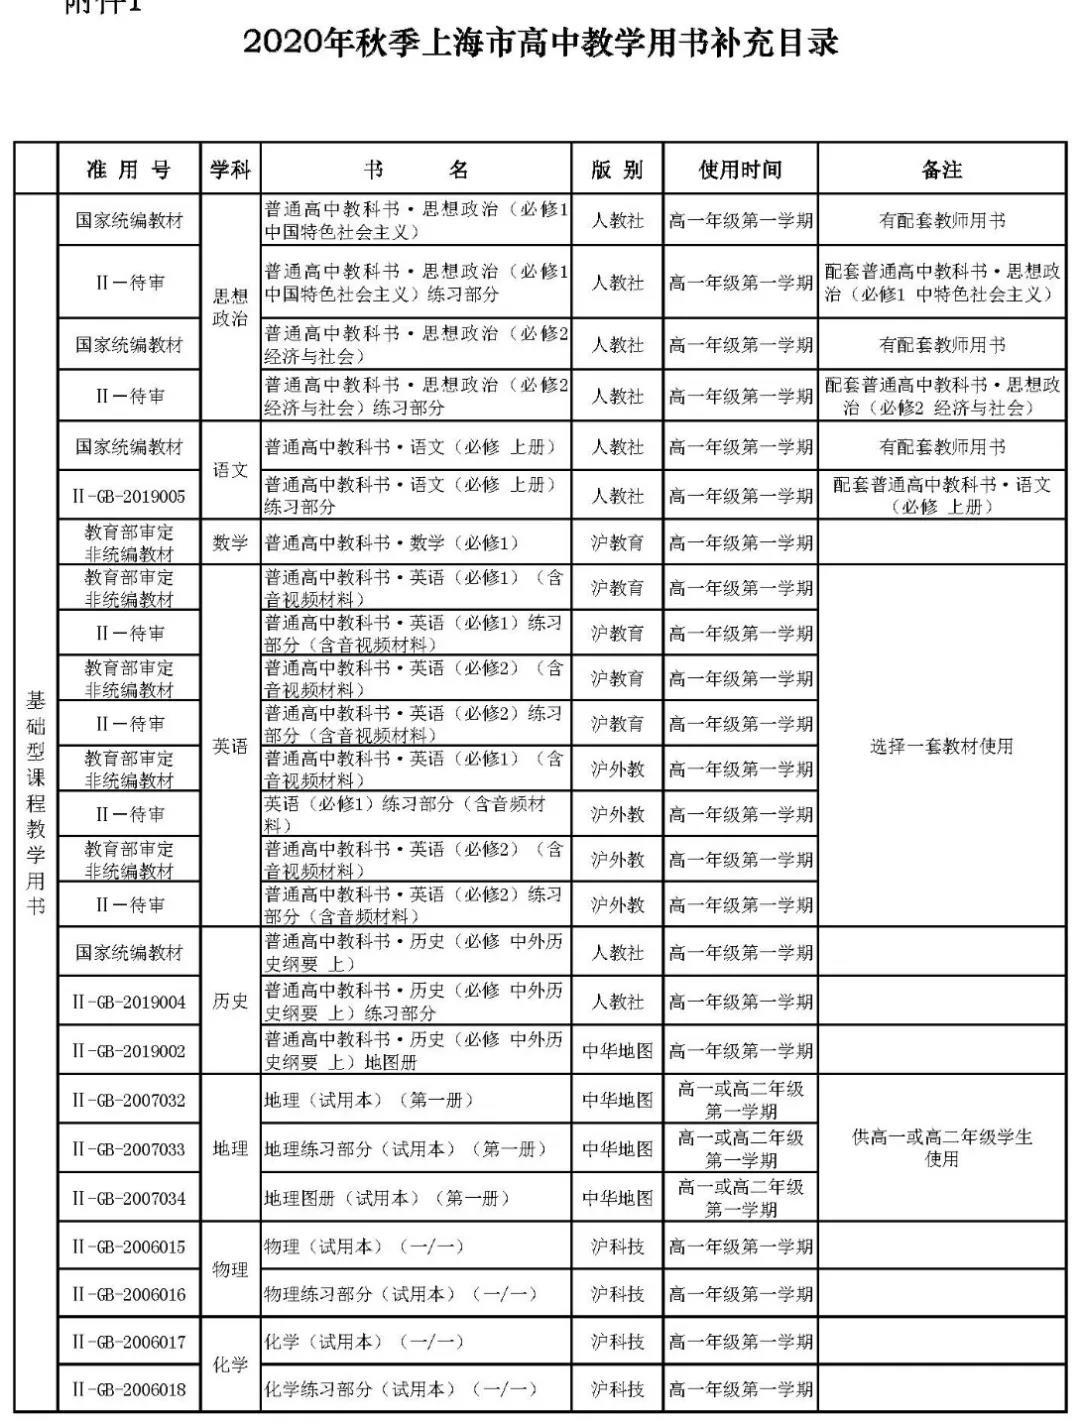 上海高中所有学科教材版本汇总表